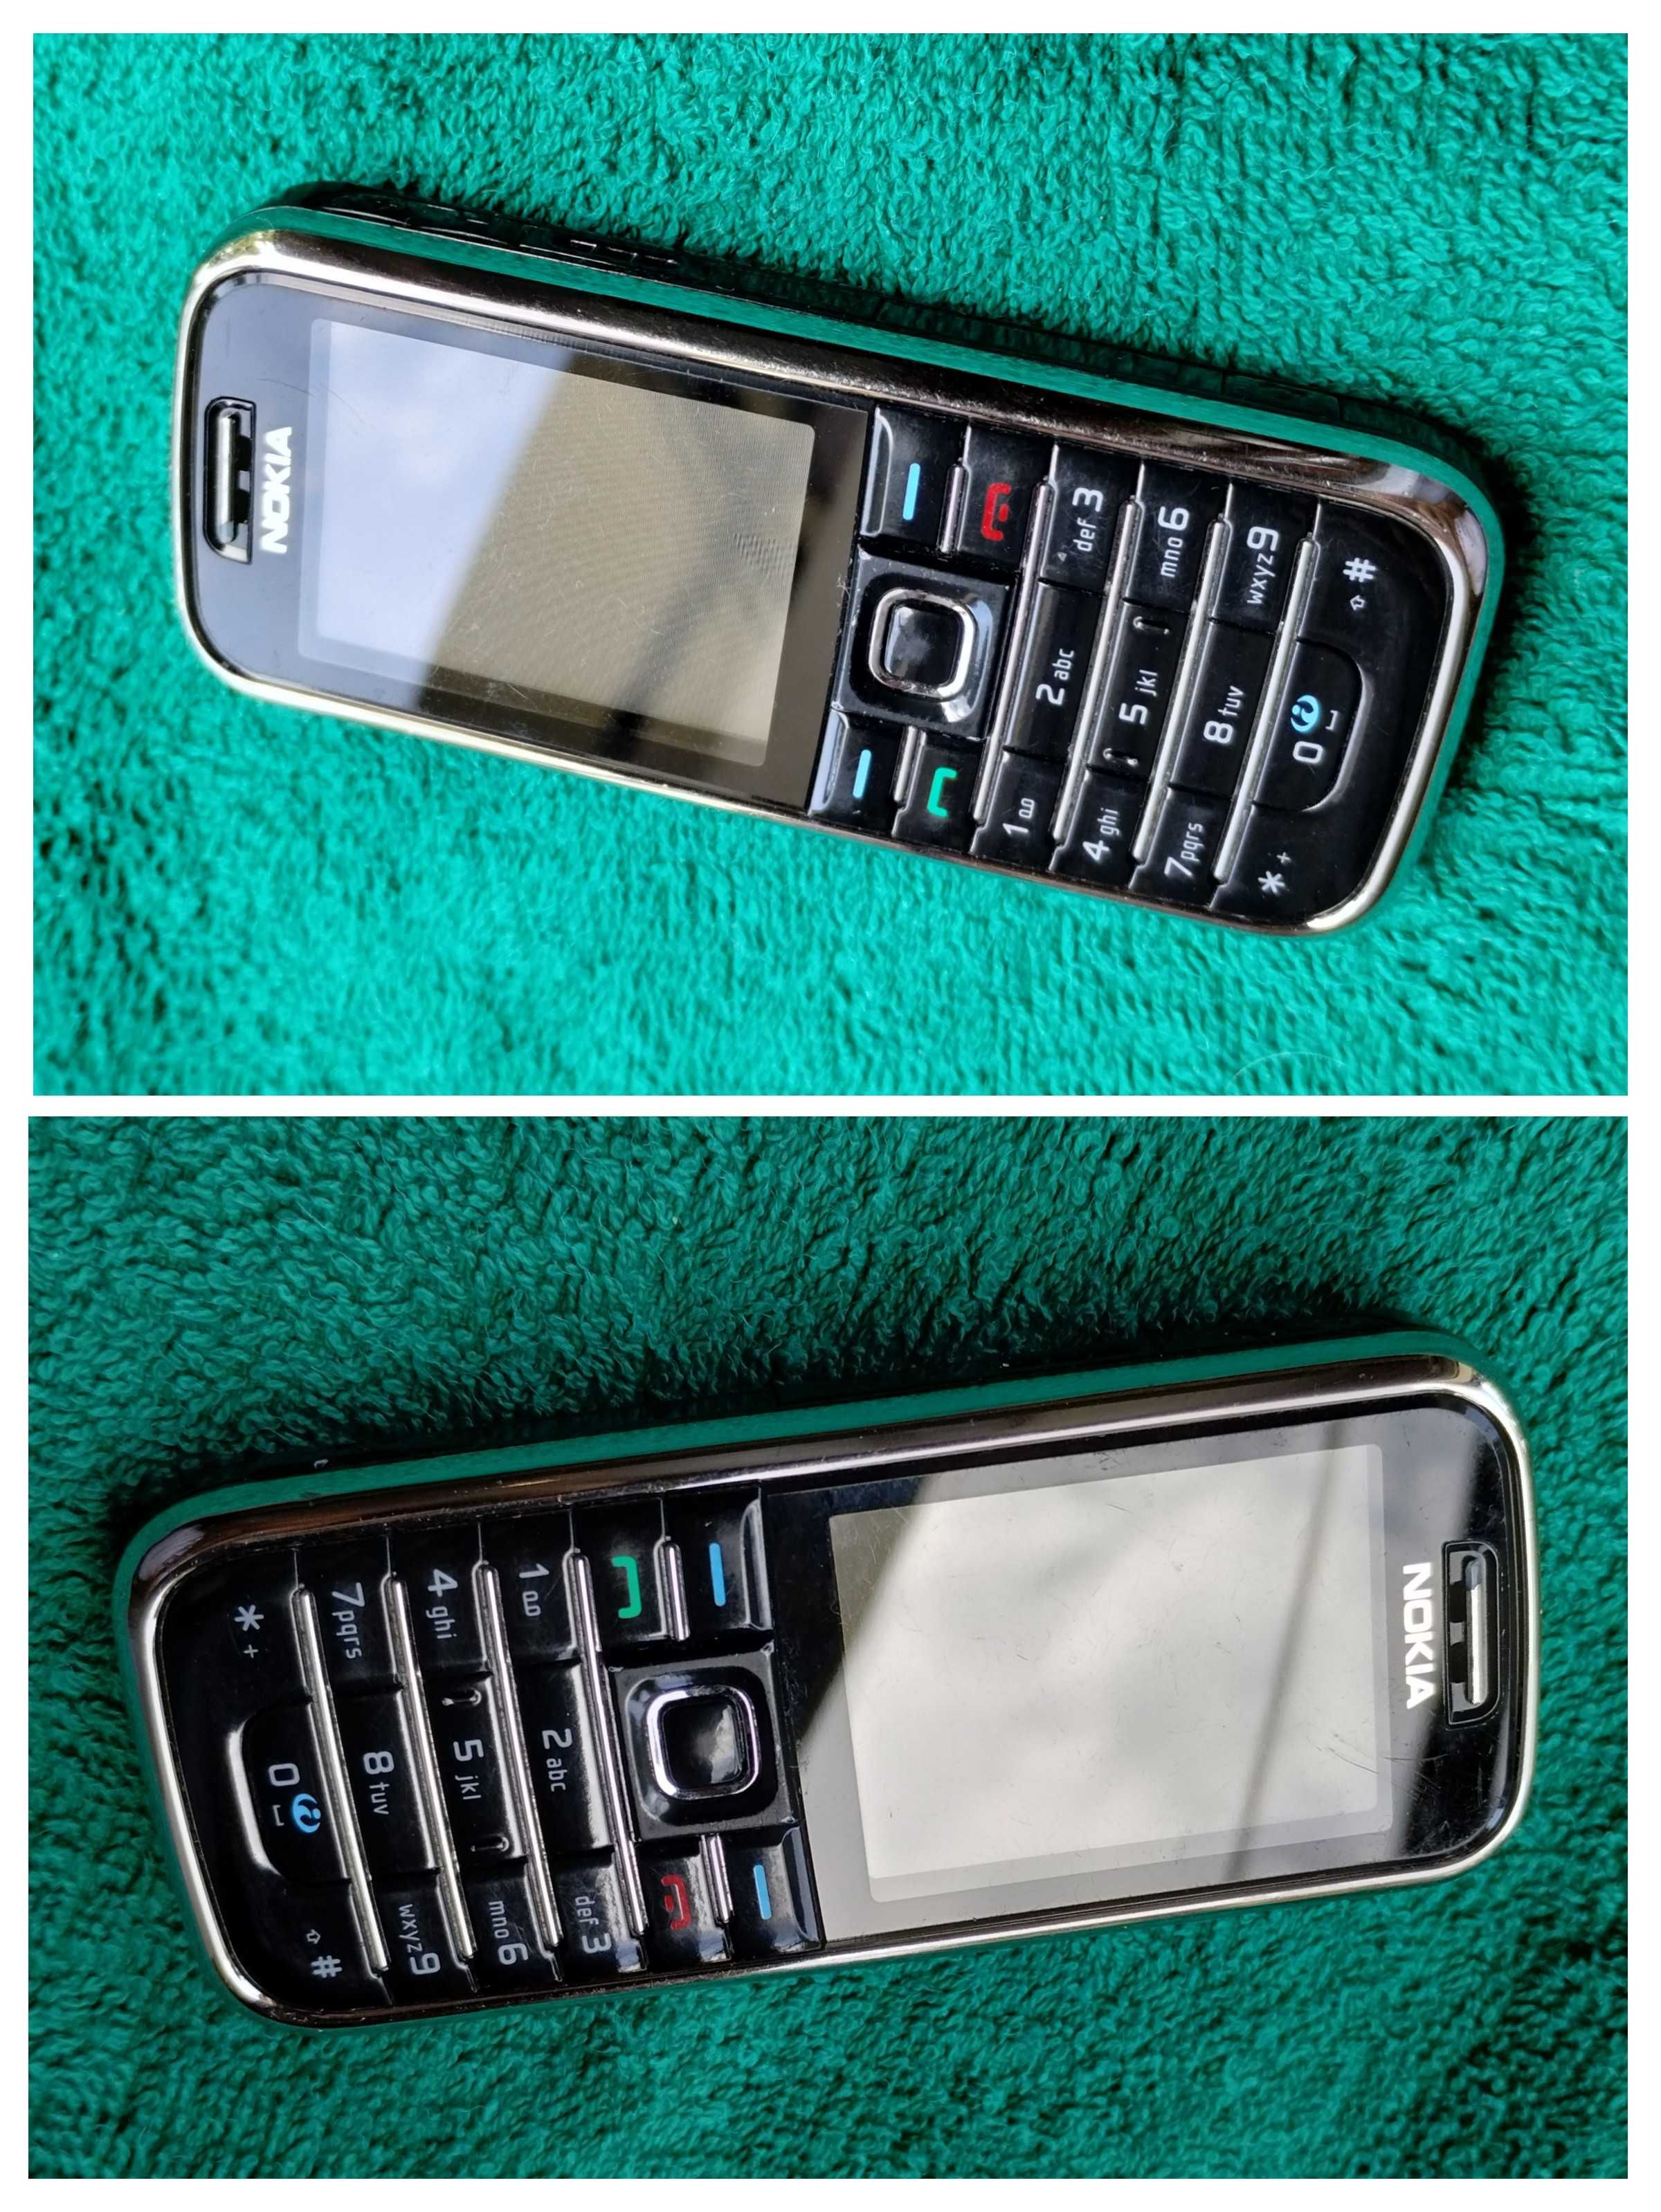 Nokia 6233 impecável